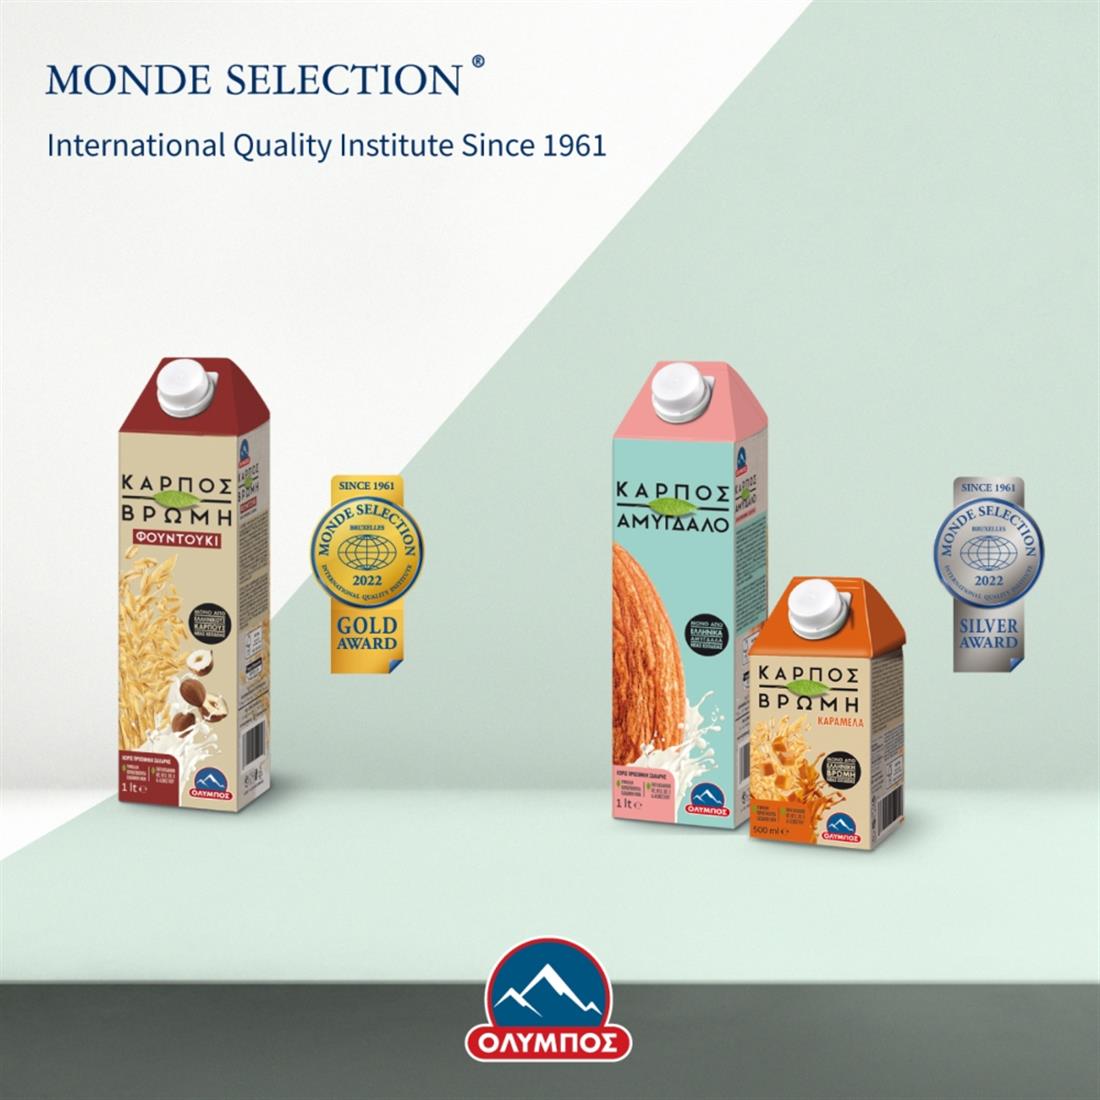 Όλυμπος - Monde Selection